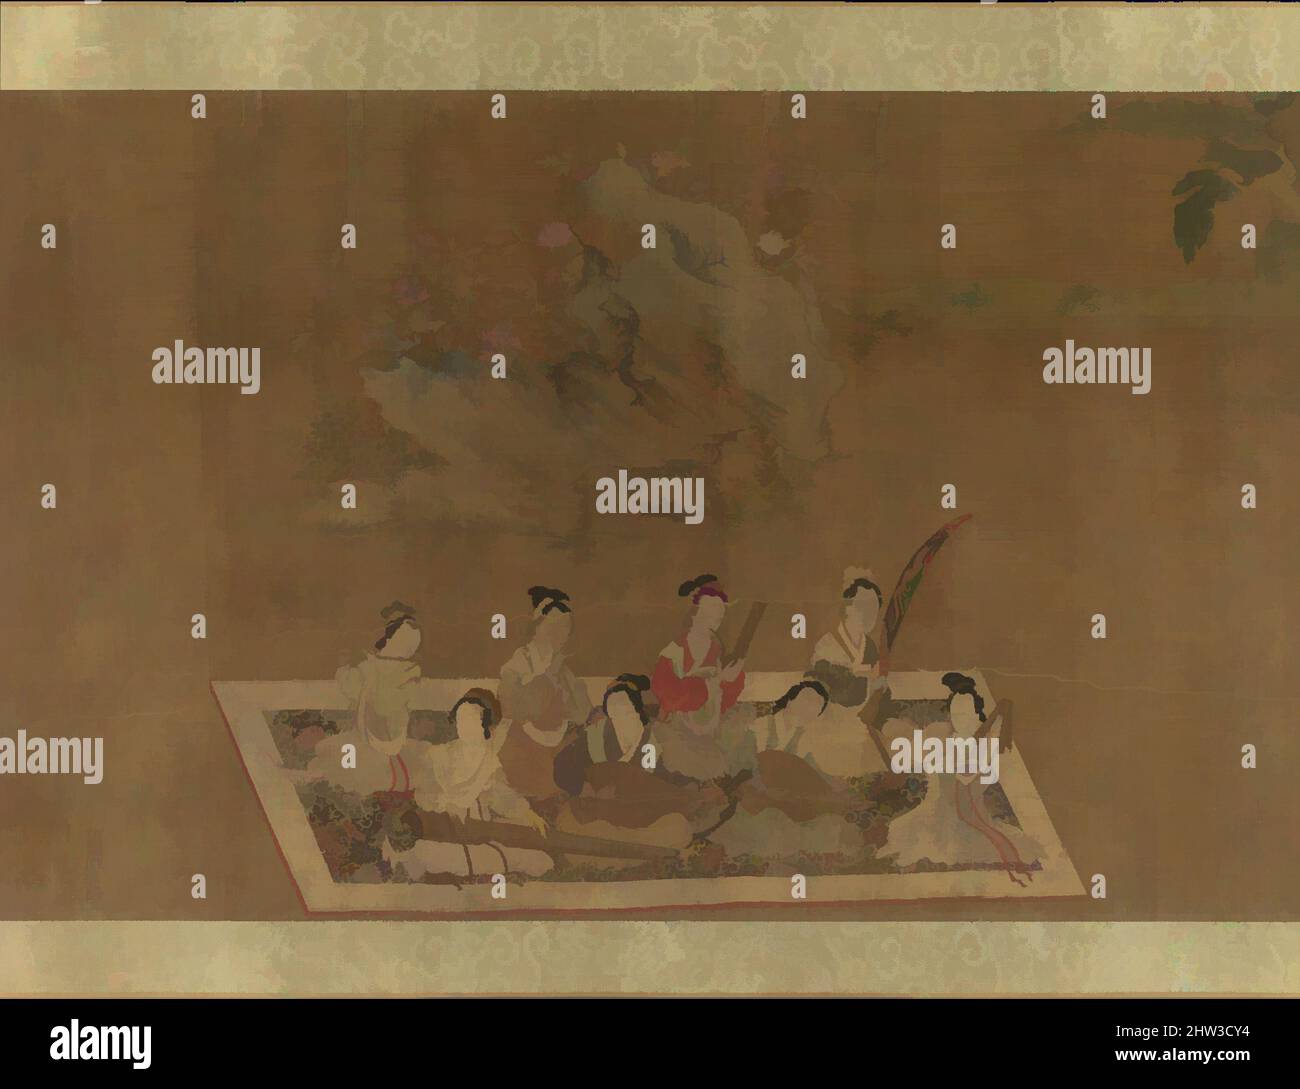 Art inspiré par 明, 佚名, 蘇蕙璇璣圖, 卷, Lady su hui et son verset Puzzle, dynastie Ming (1368–1644), 16th Century, Chine, Handscroll; Encre et couleur sur soie, image: 10 1/16 po. X 10 pi. 2 3/4 po (25,6 x 311,8 cm), peintures, dans le style de Qiu Ying (chinois, ca. 1495–1552), cette scène apparaît, oeuvres classiques modernisées par Artotop avec une touche de modernité. Formes, couleur et valeur, impact visuel accrocheur sur l'art émotions par la liberté d'œuvres d'art d'une manière contemporaine. Un message intemporel qui cherche une nouvelle direction créative. Artistes qui se tournent vers le support numérique et créent le NFT Artotop Banque D'Images